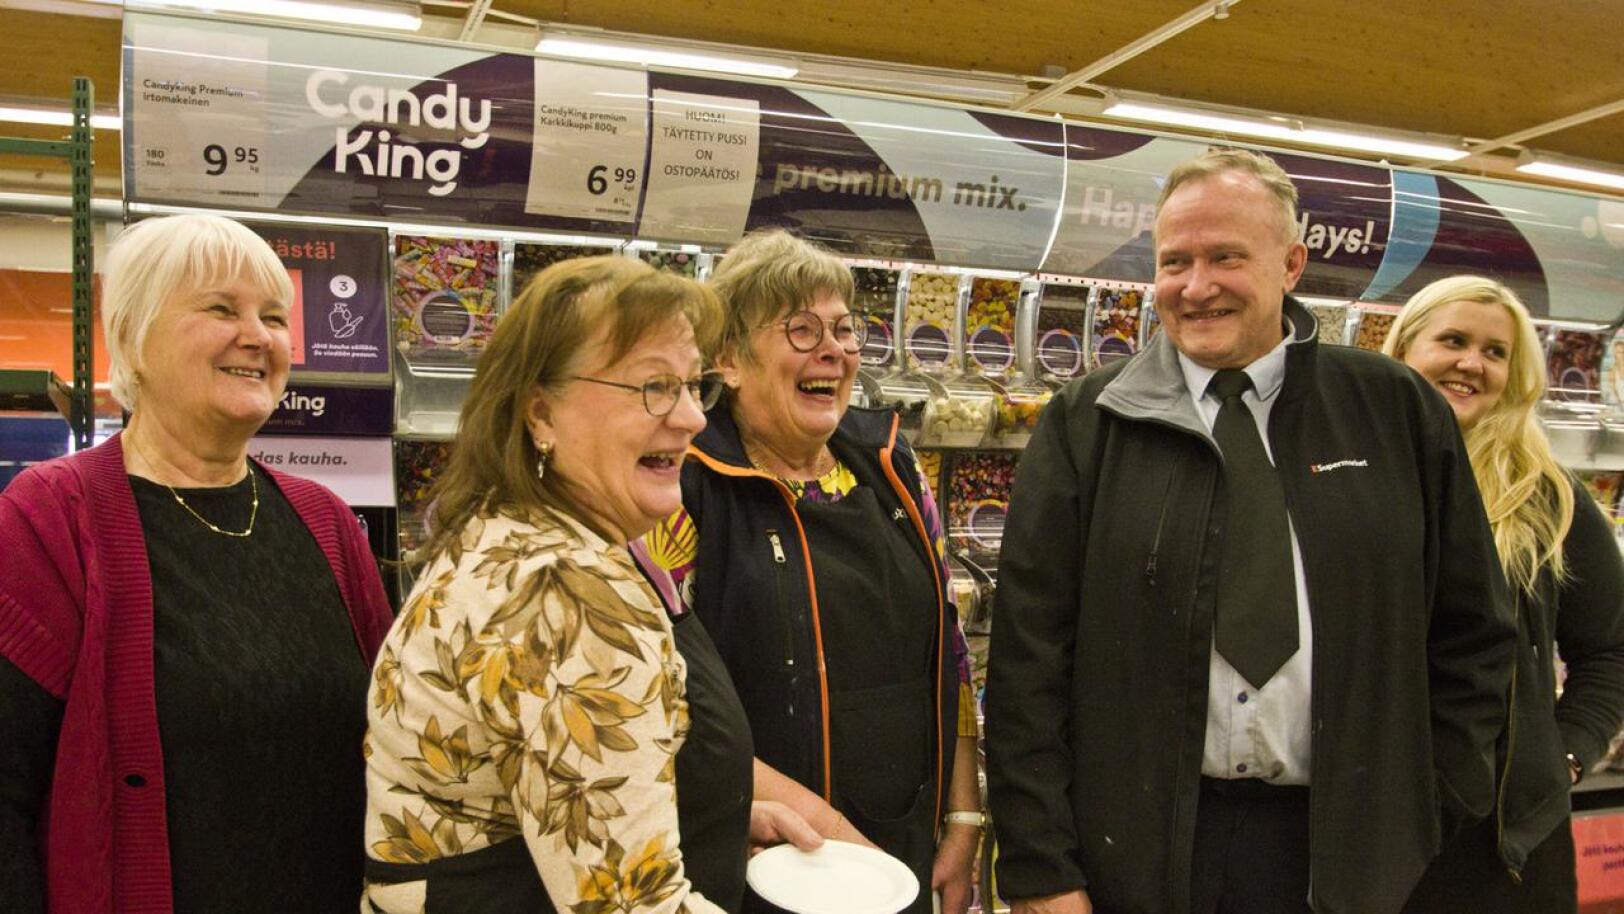 Kakkukahveja olivat tarjoilemassa eläkeläiset Hilkka Rajaniemi, Greetta Löllö ja Aulikki Similä sekä pian eläköityvä Martti Liuska ja tytär Mari Liuska.